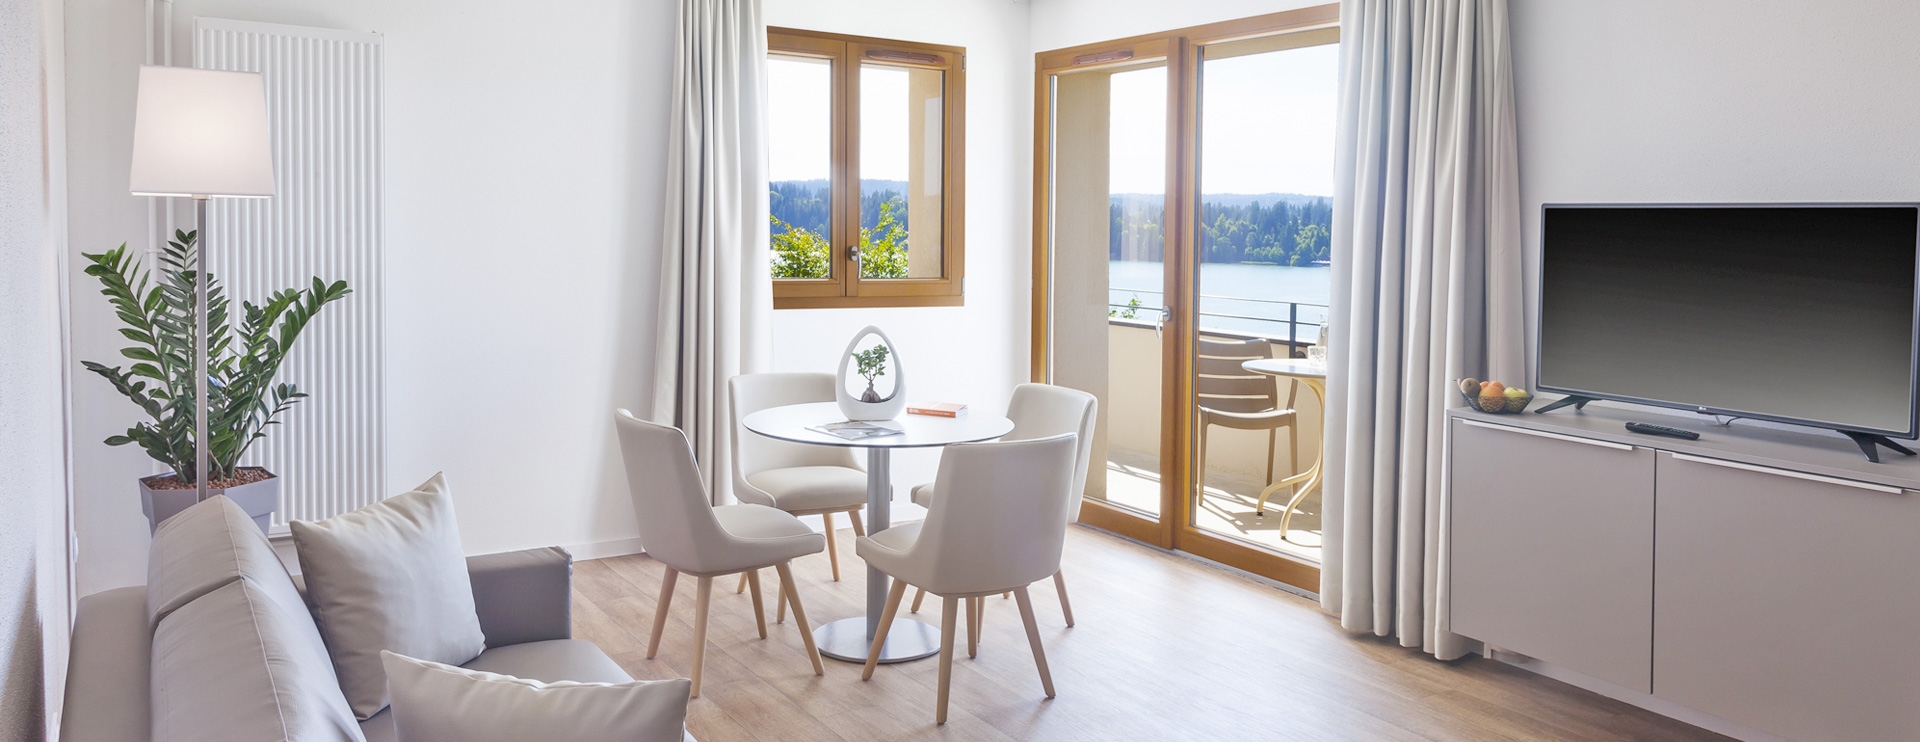 Suite appartement hôtel spa Franche-Comté Les Rives Sauvages